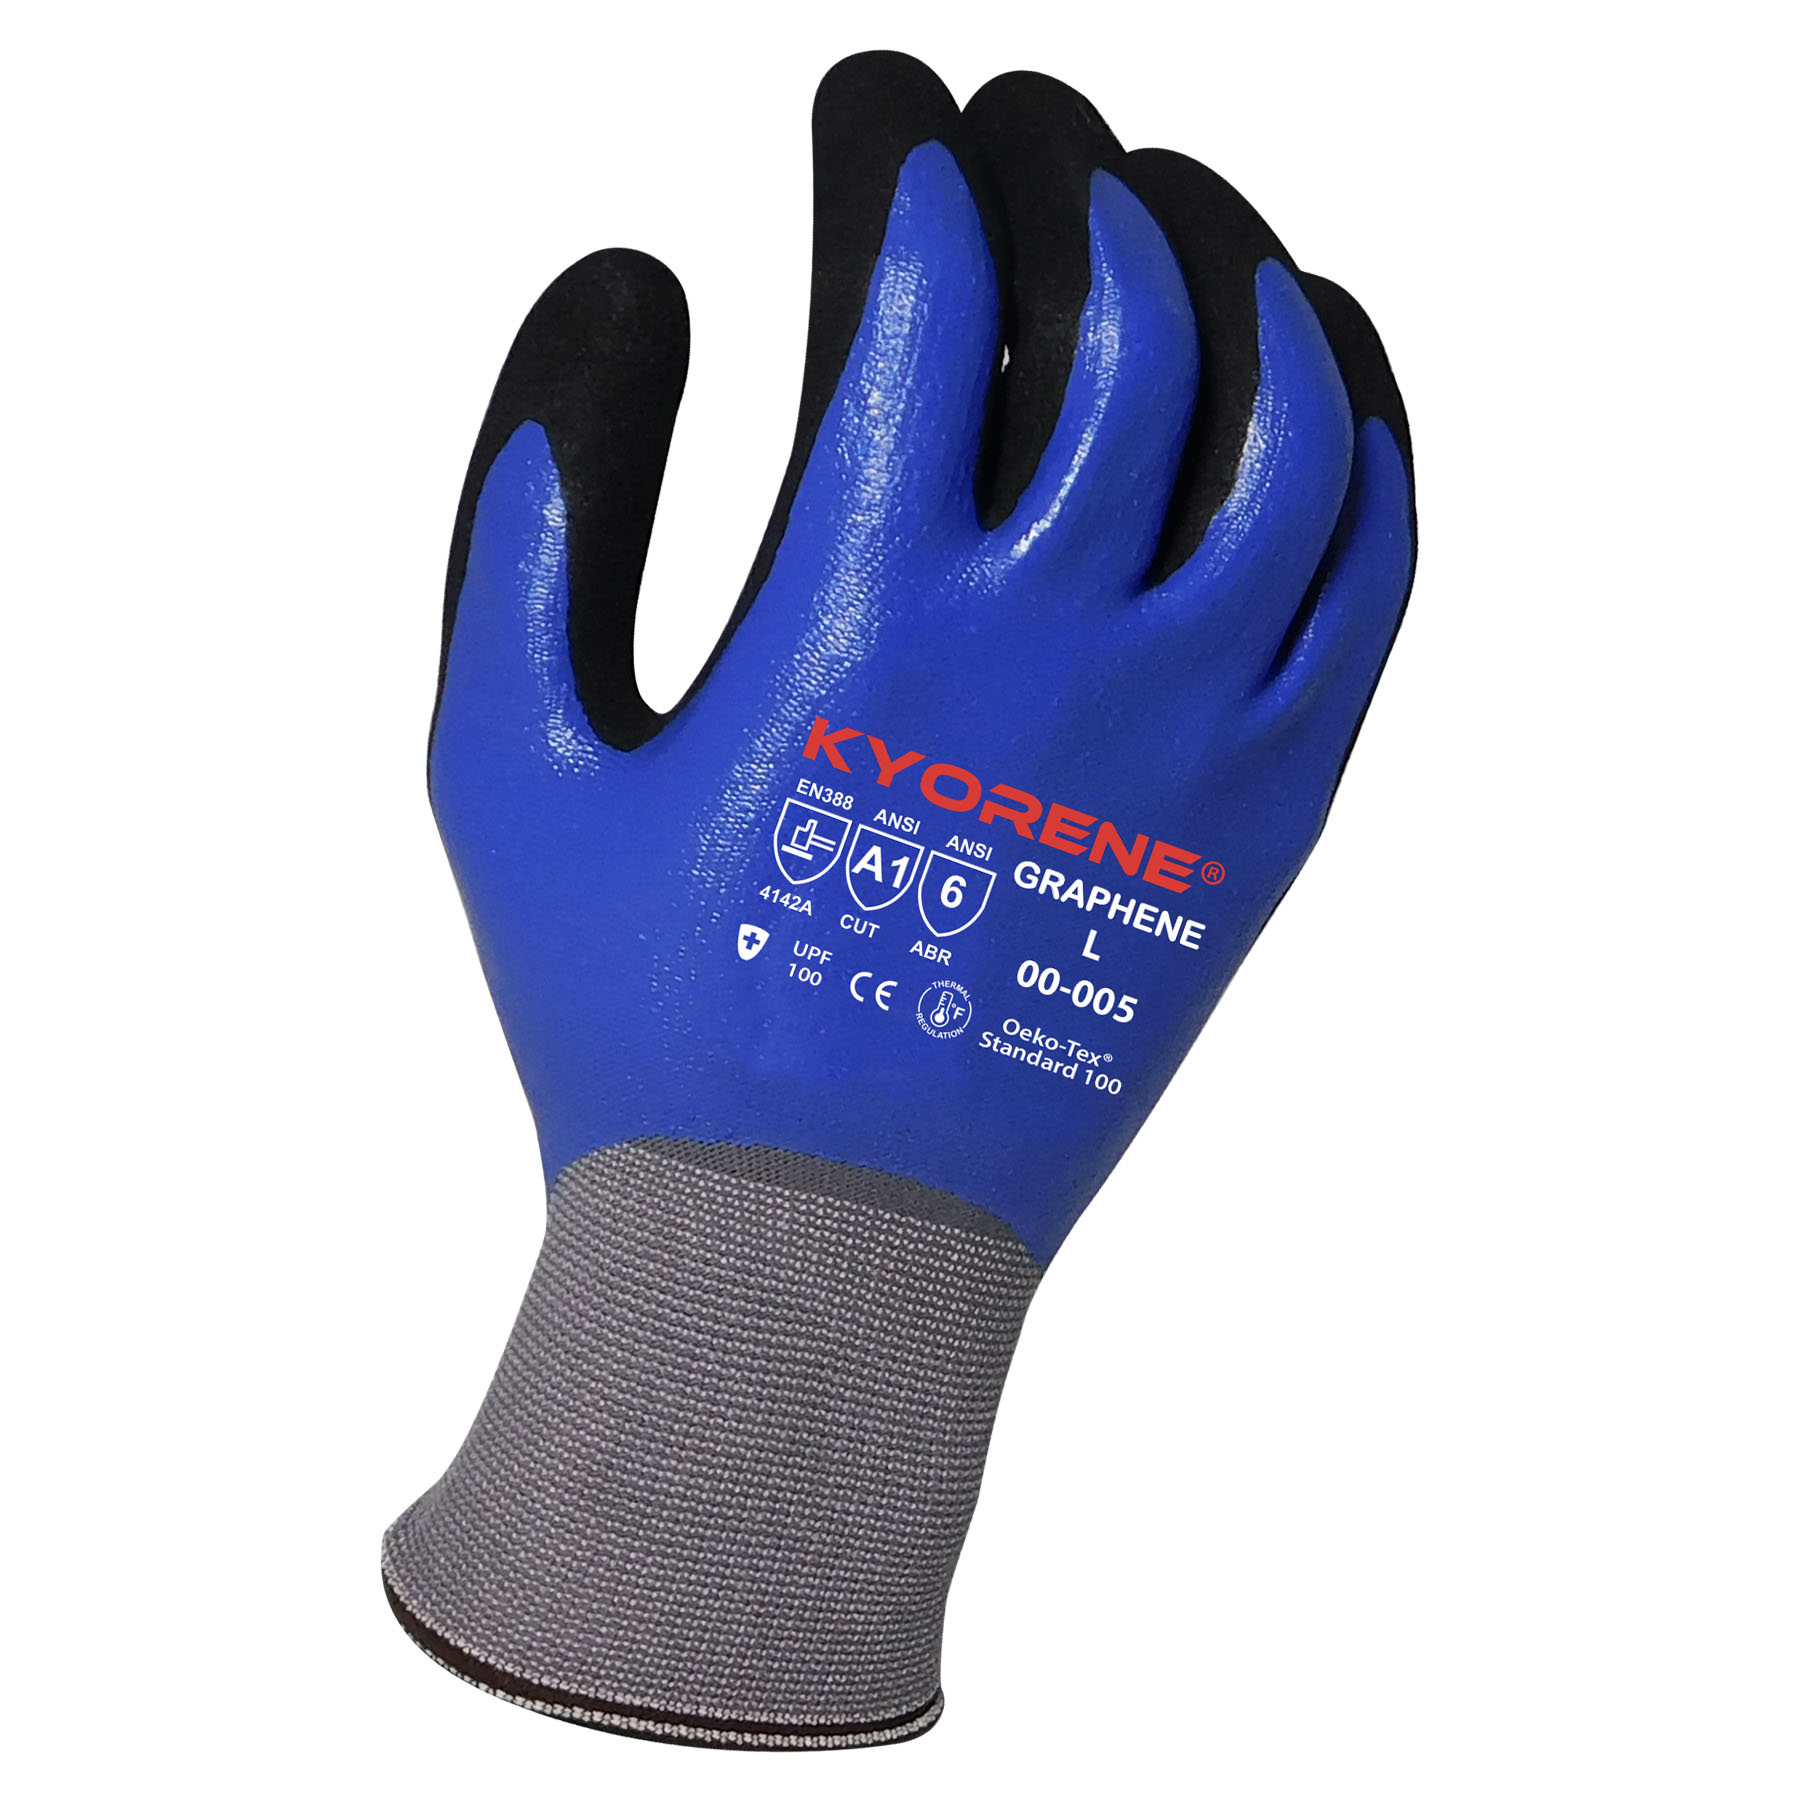 Armor Guys Kyorene® Gloves - Spill Control